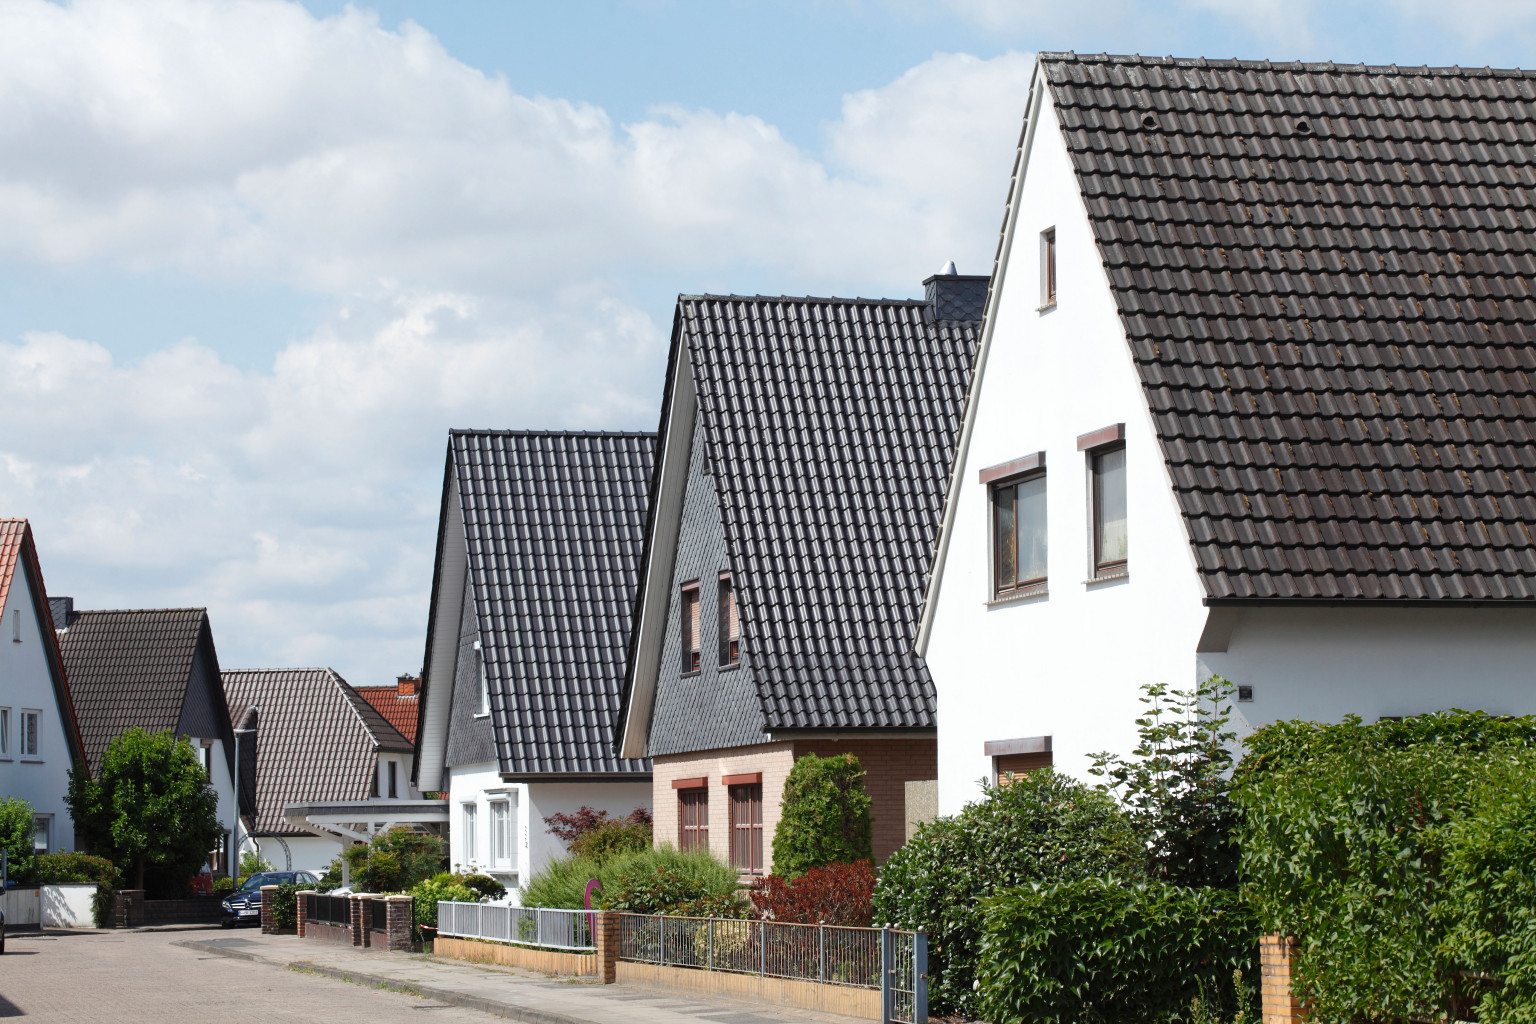 Wohnhaussiedlung | energetische Sanierung | Heizkosten sparen | Der Dämmstoff | Foto von Detailfoto – istockphoto.com